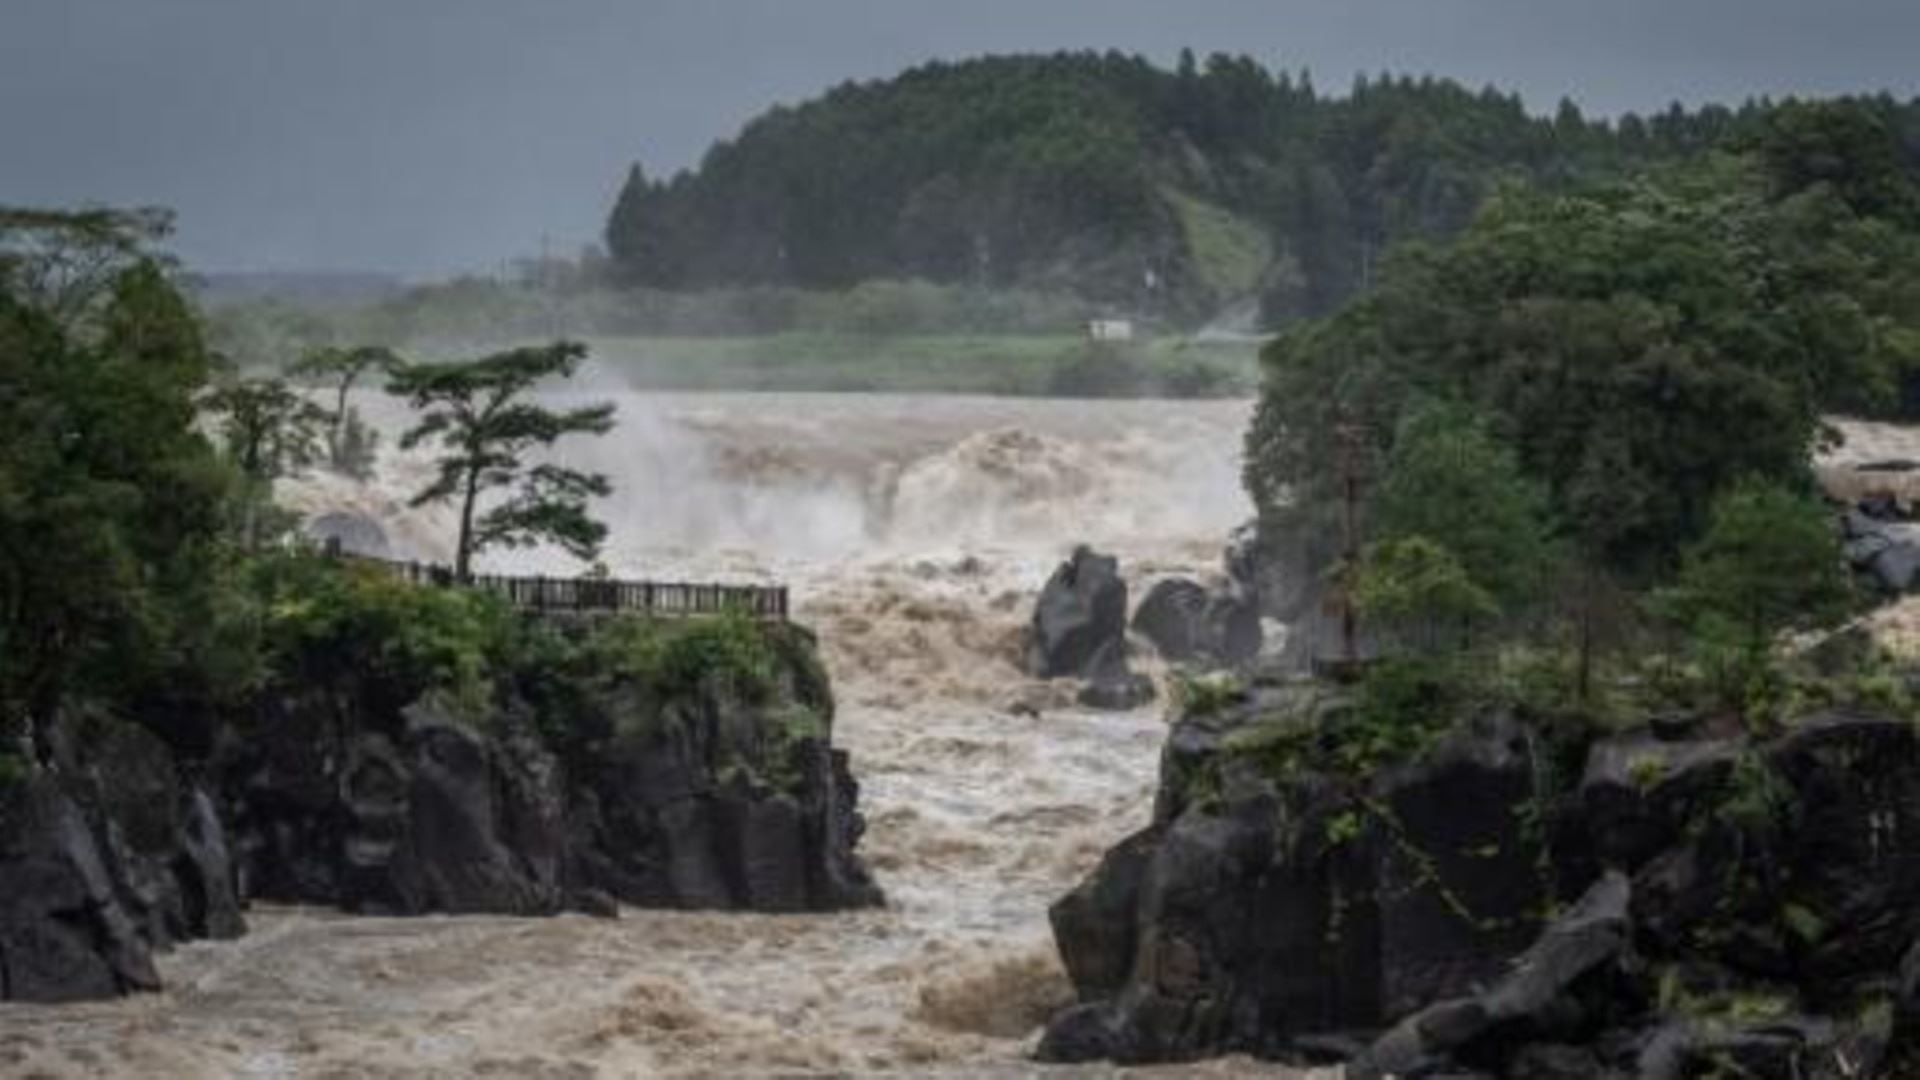 انزلاق التربة أودى بحياته.. إعصار "تالاس" يحصد الكوارث في اليابان